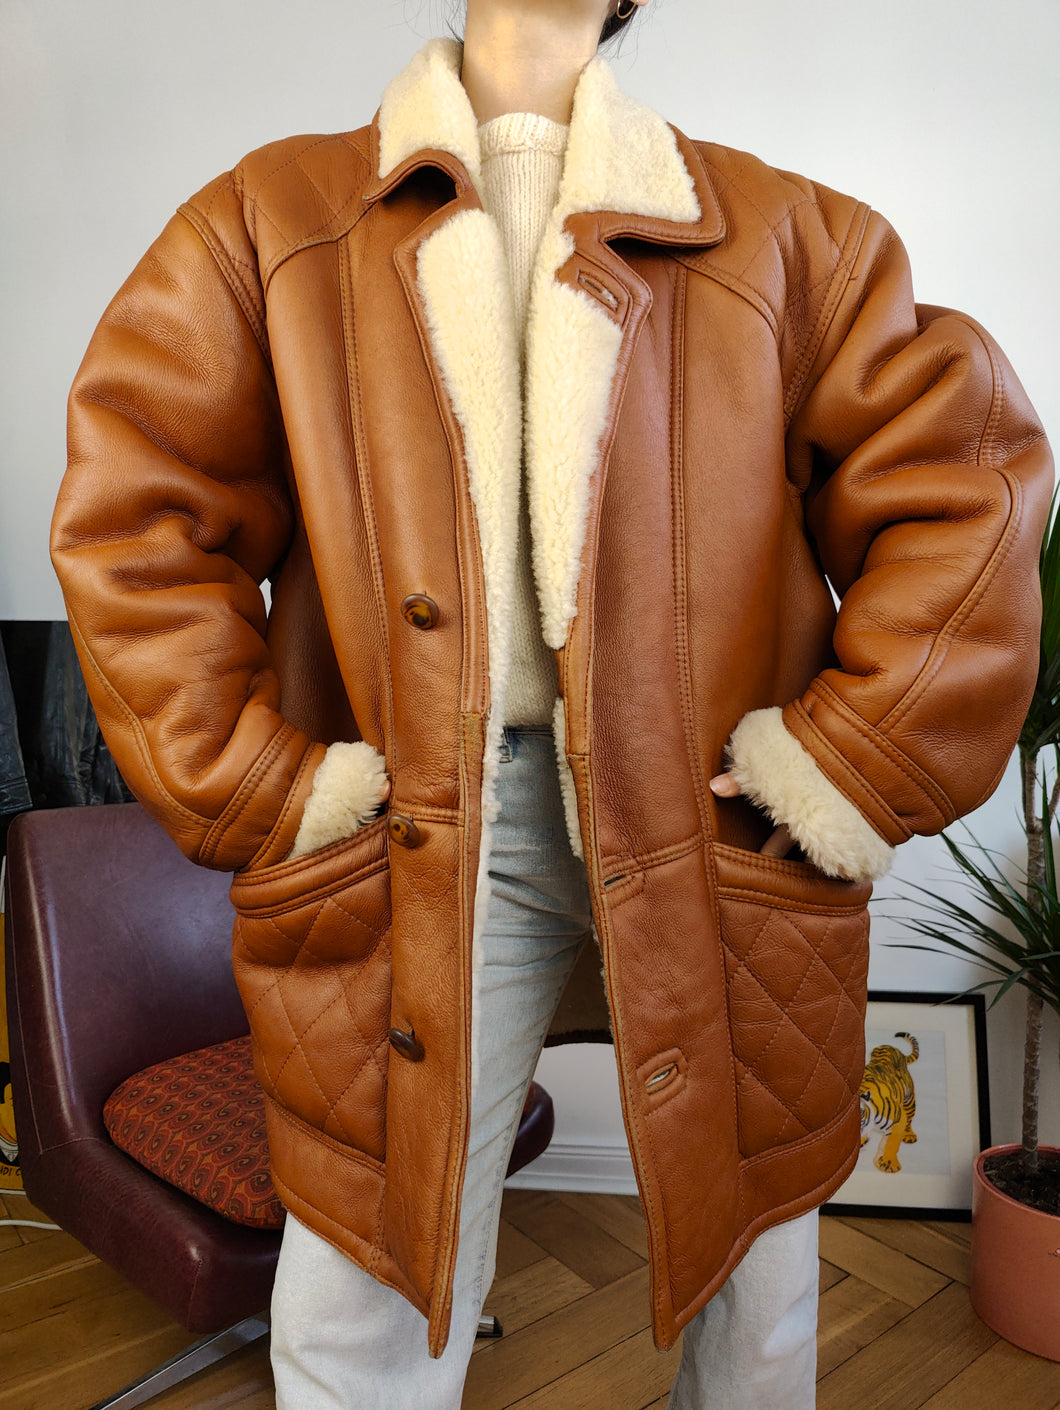 Vintage genuine shearling leather coat tan brown sheepskin lambskin sherpa winter heavy midi jacket L-XL